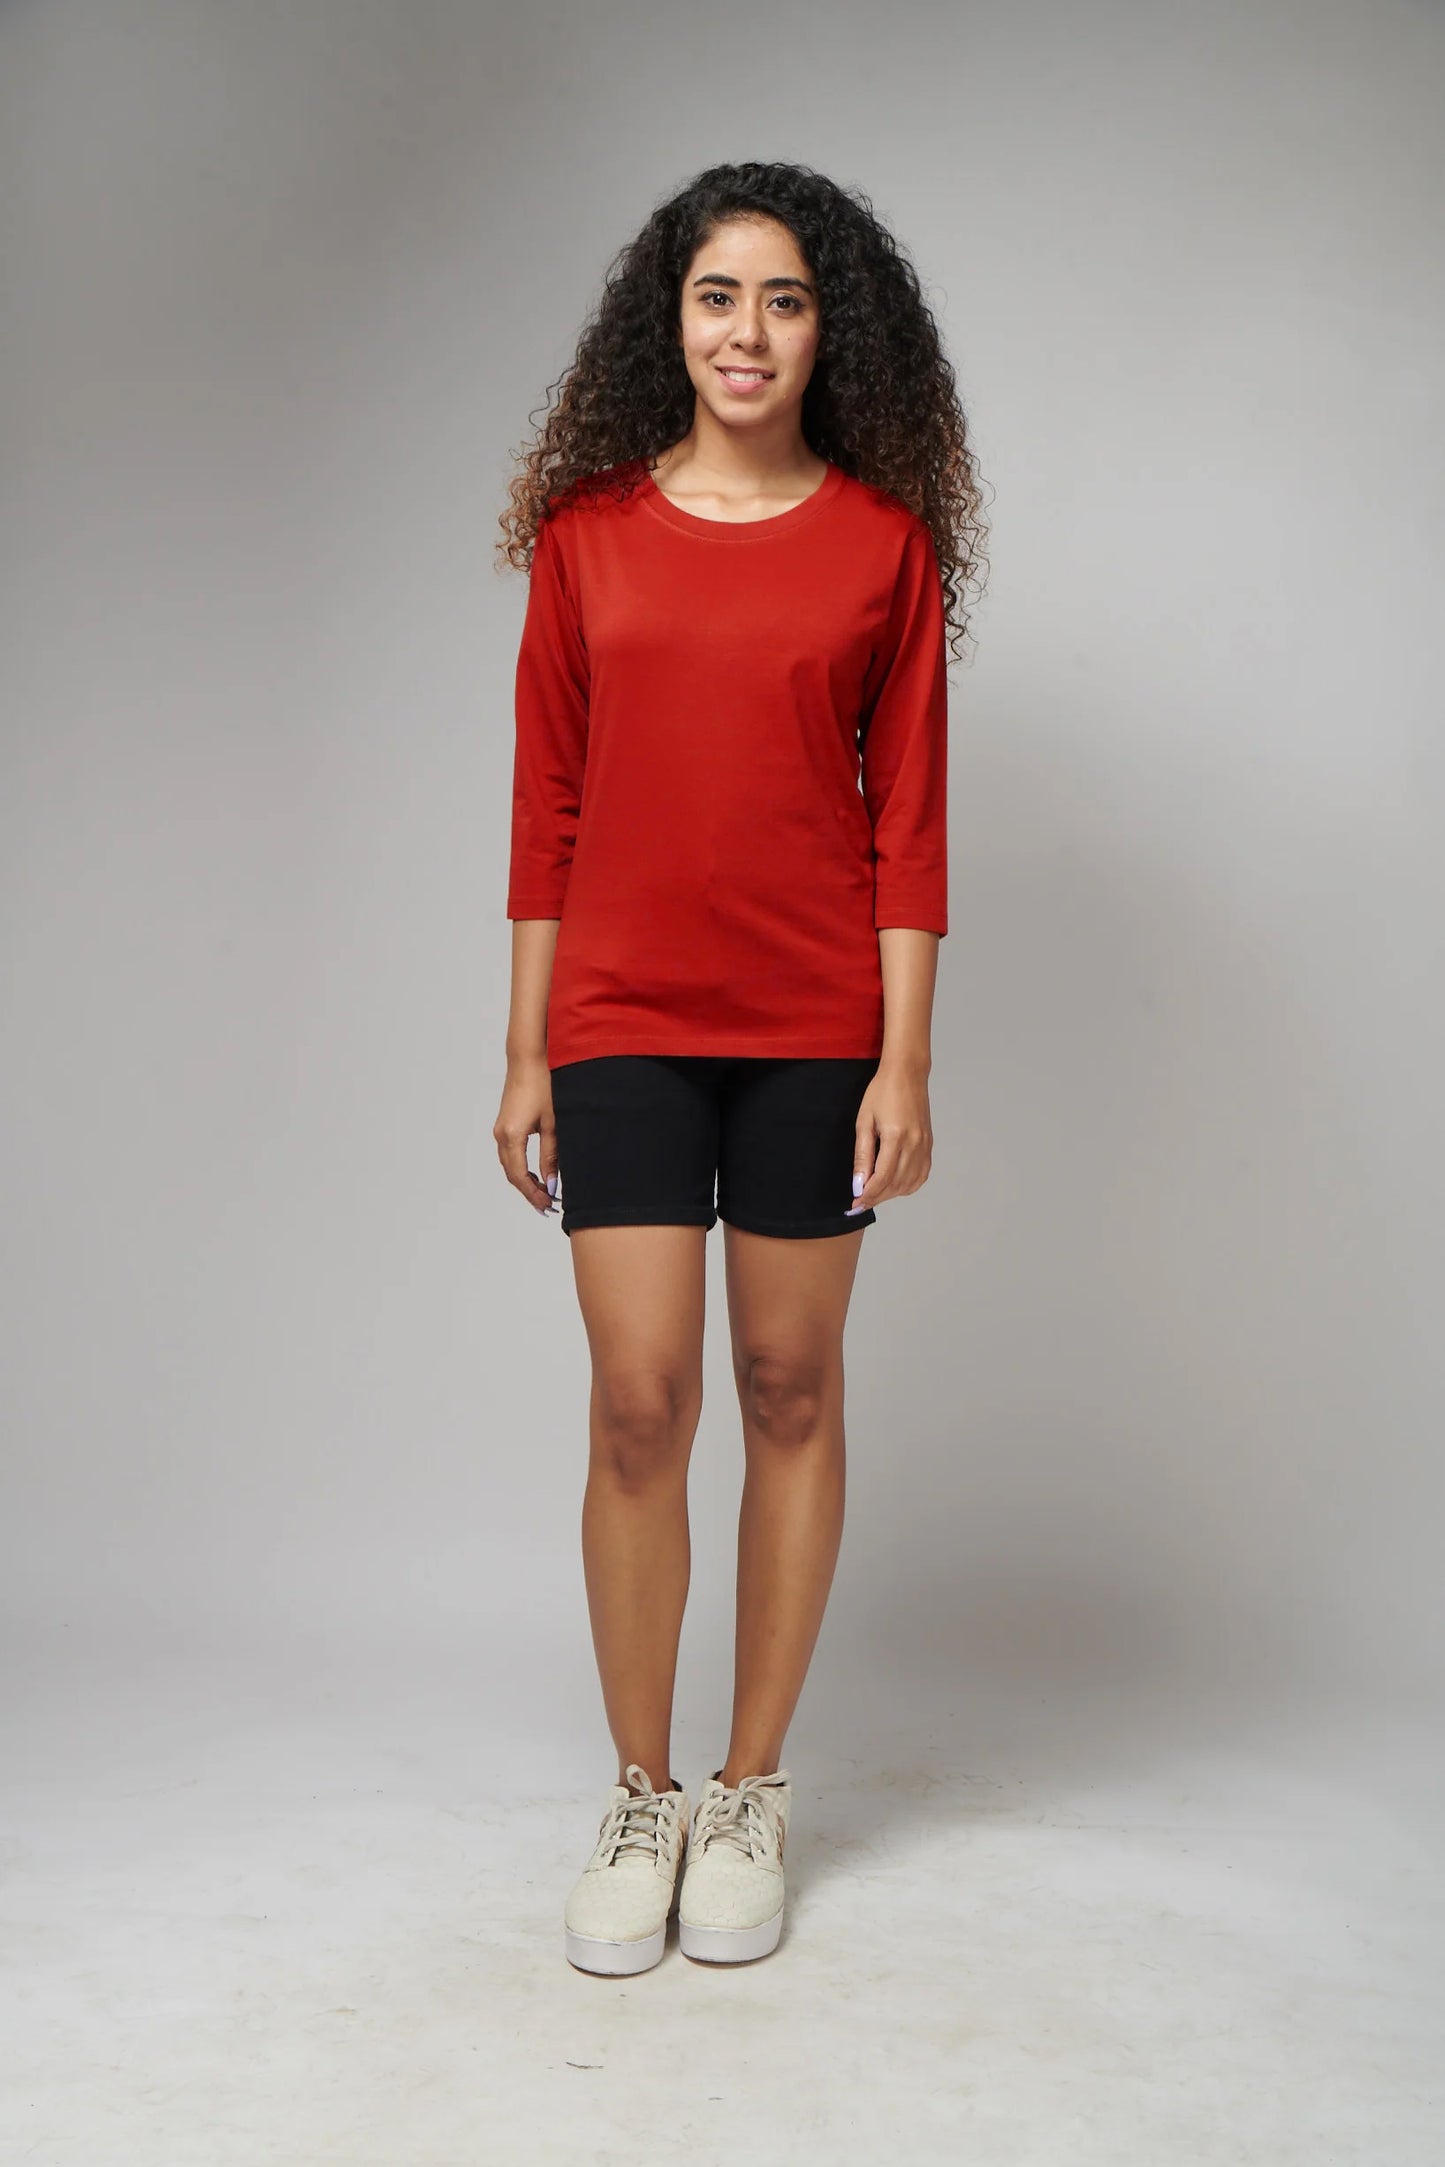 Women's Basic Red Full Sleeves T-Shirt